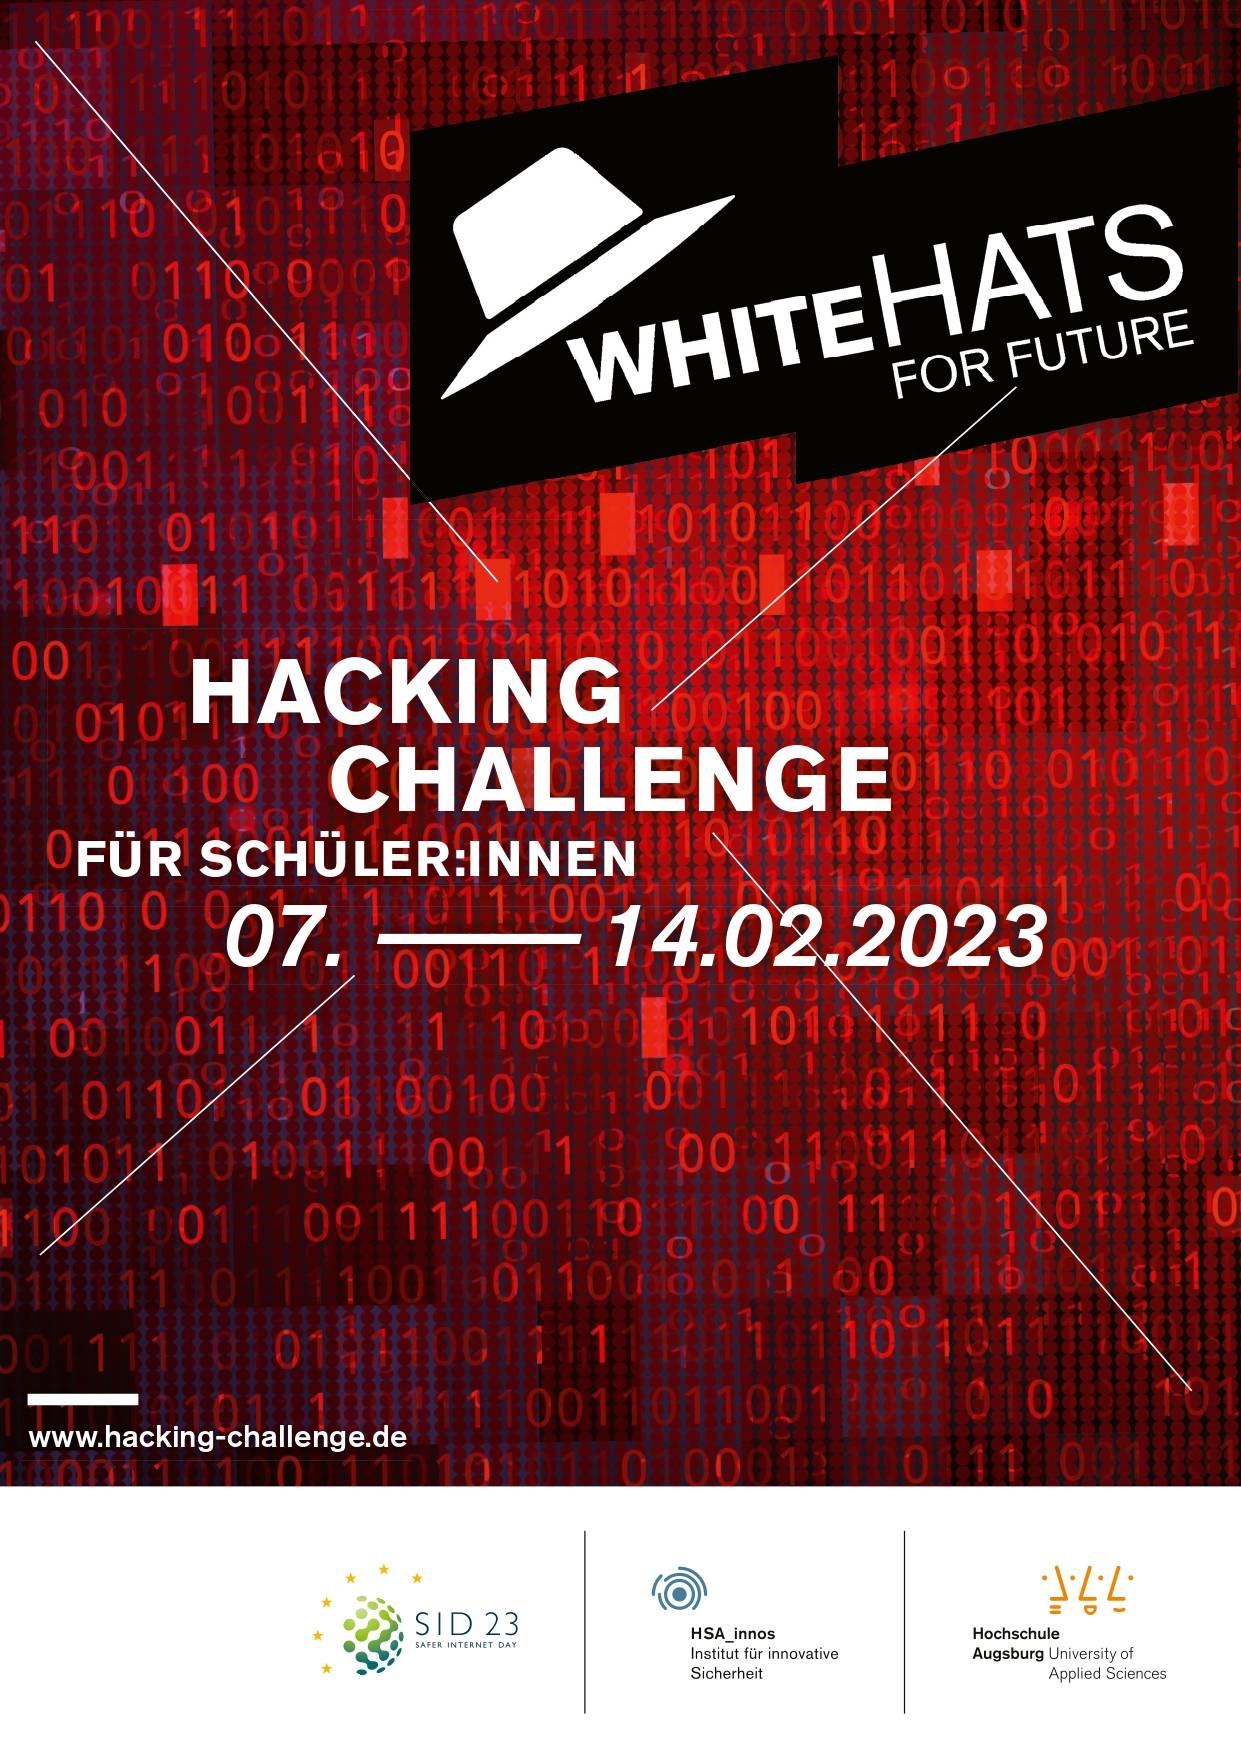 Plakat: White Hats for Future - Hacking Challenge für Schüler:innen 2023